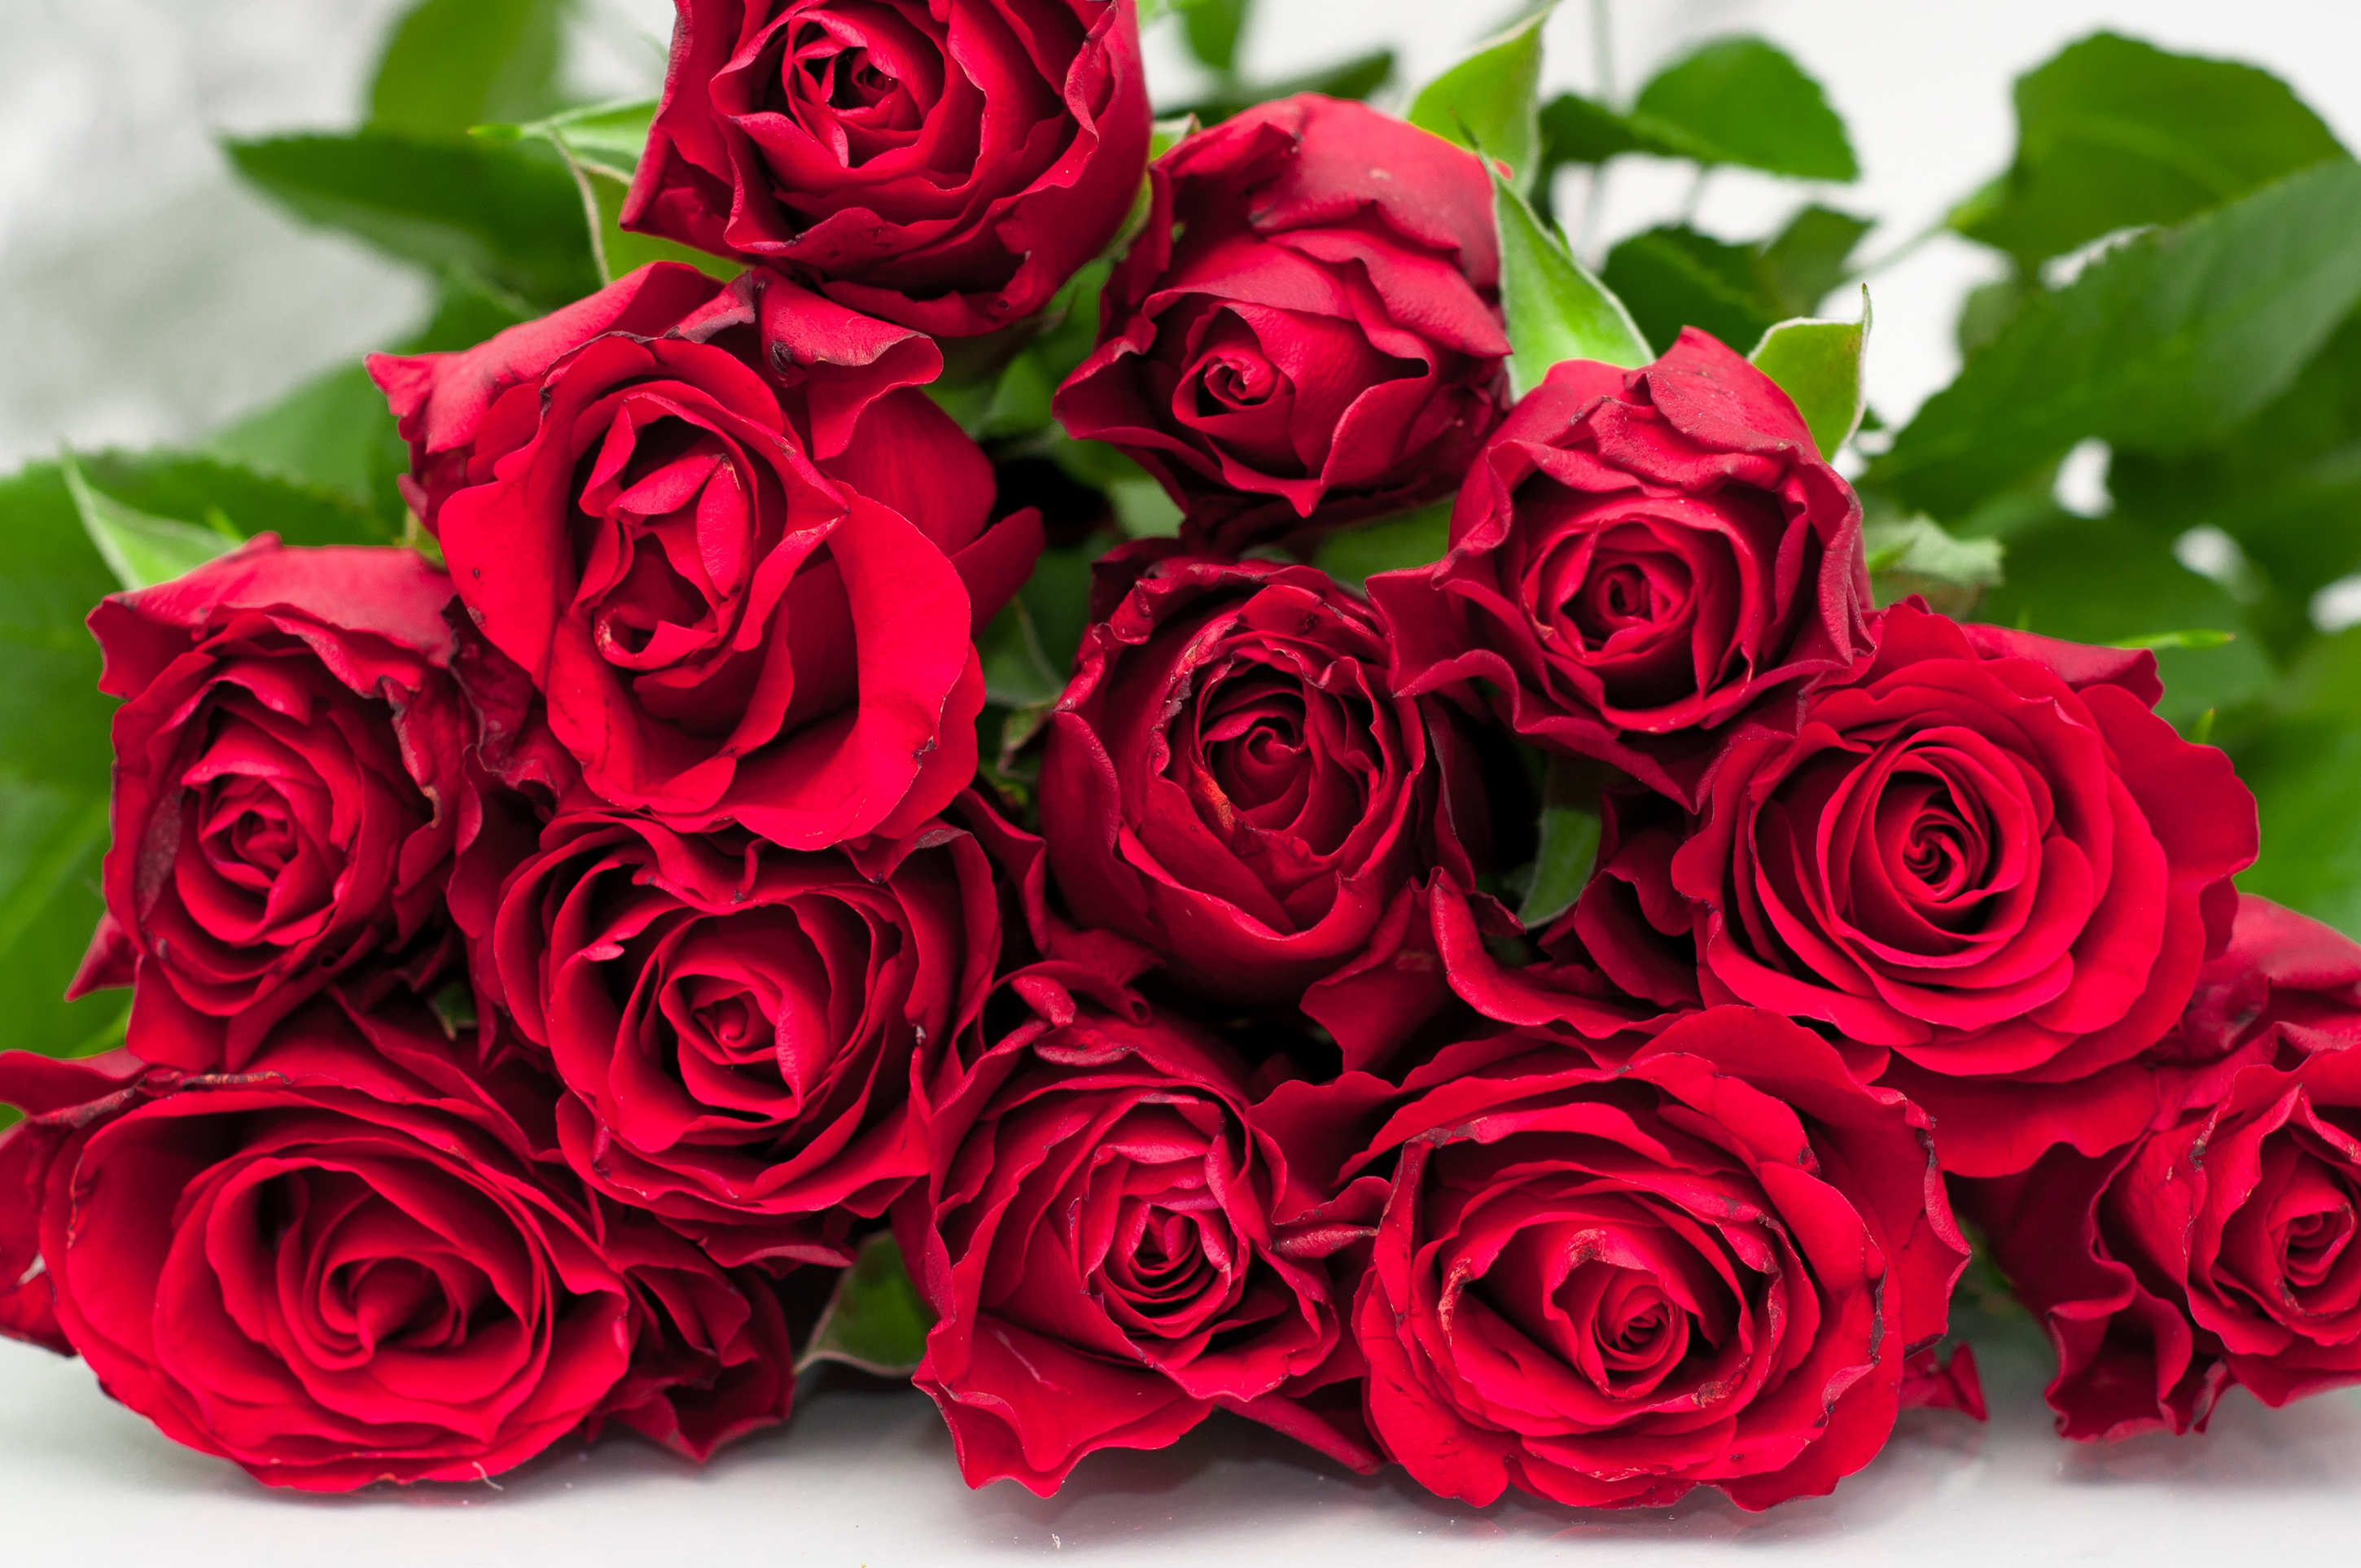 1415 роз. Красивый букет роз. Букет красных роз. Шикарный букет алых роз.